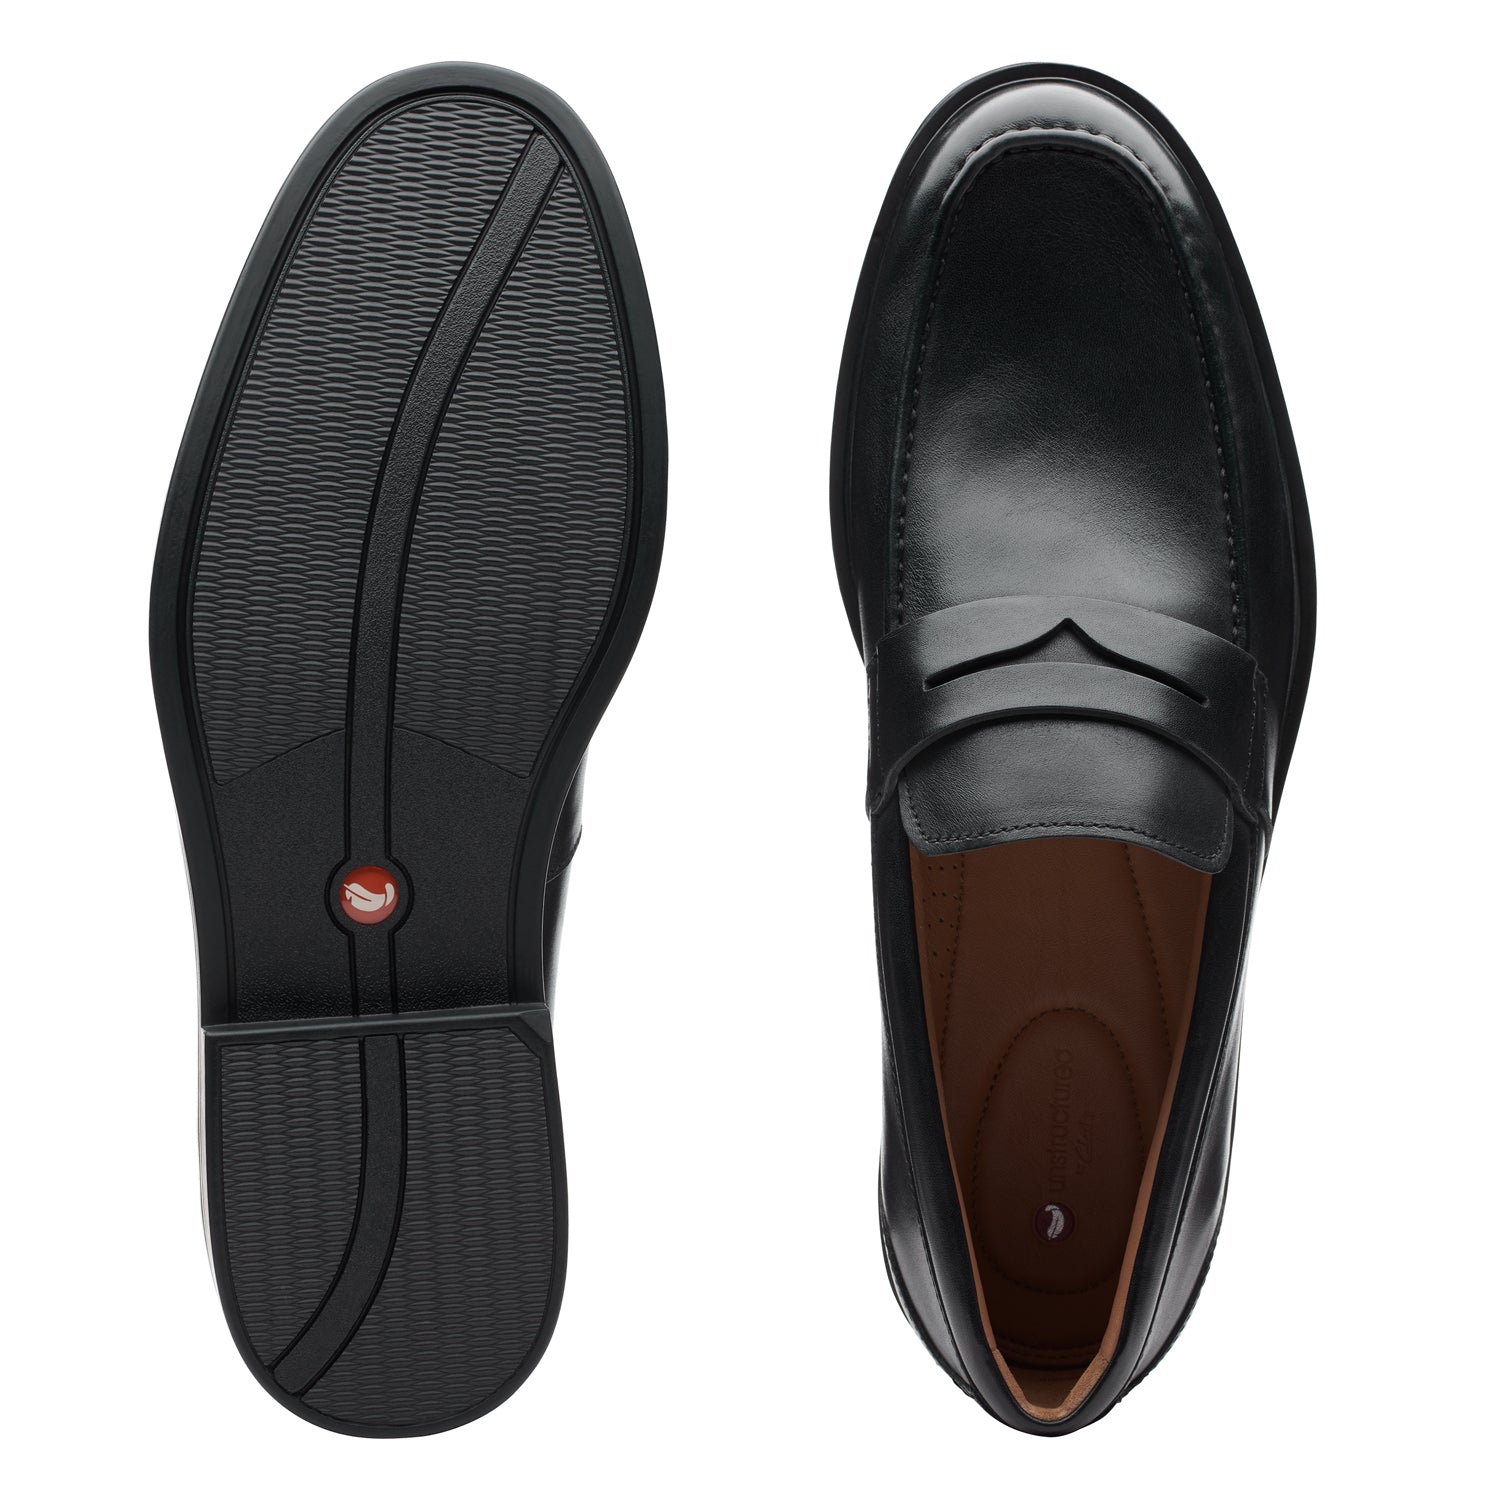 Clarks Un Aldric Step Shoes - Black Leather - 261401397 - G Width (Standard Fit)